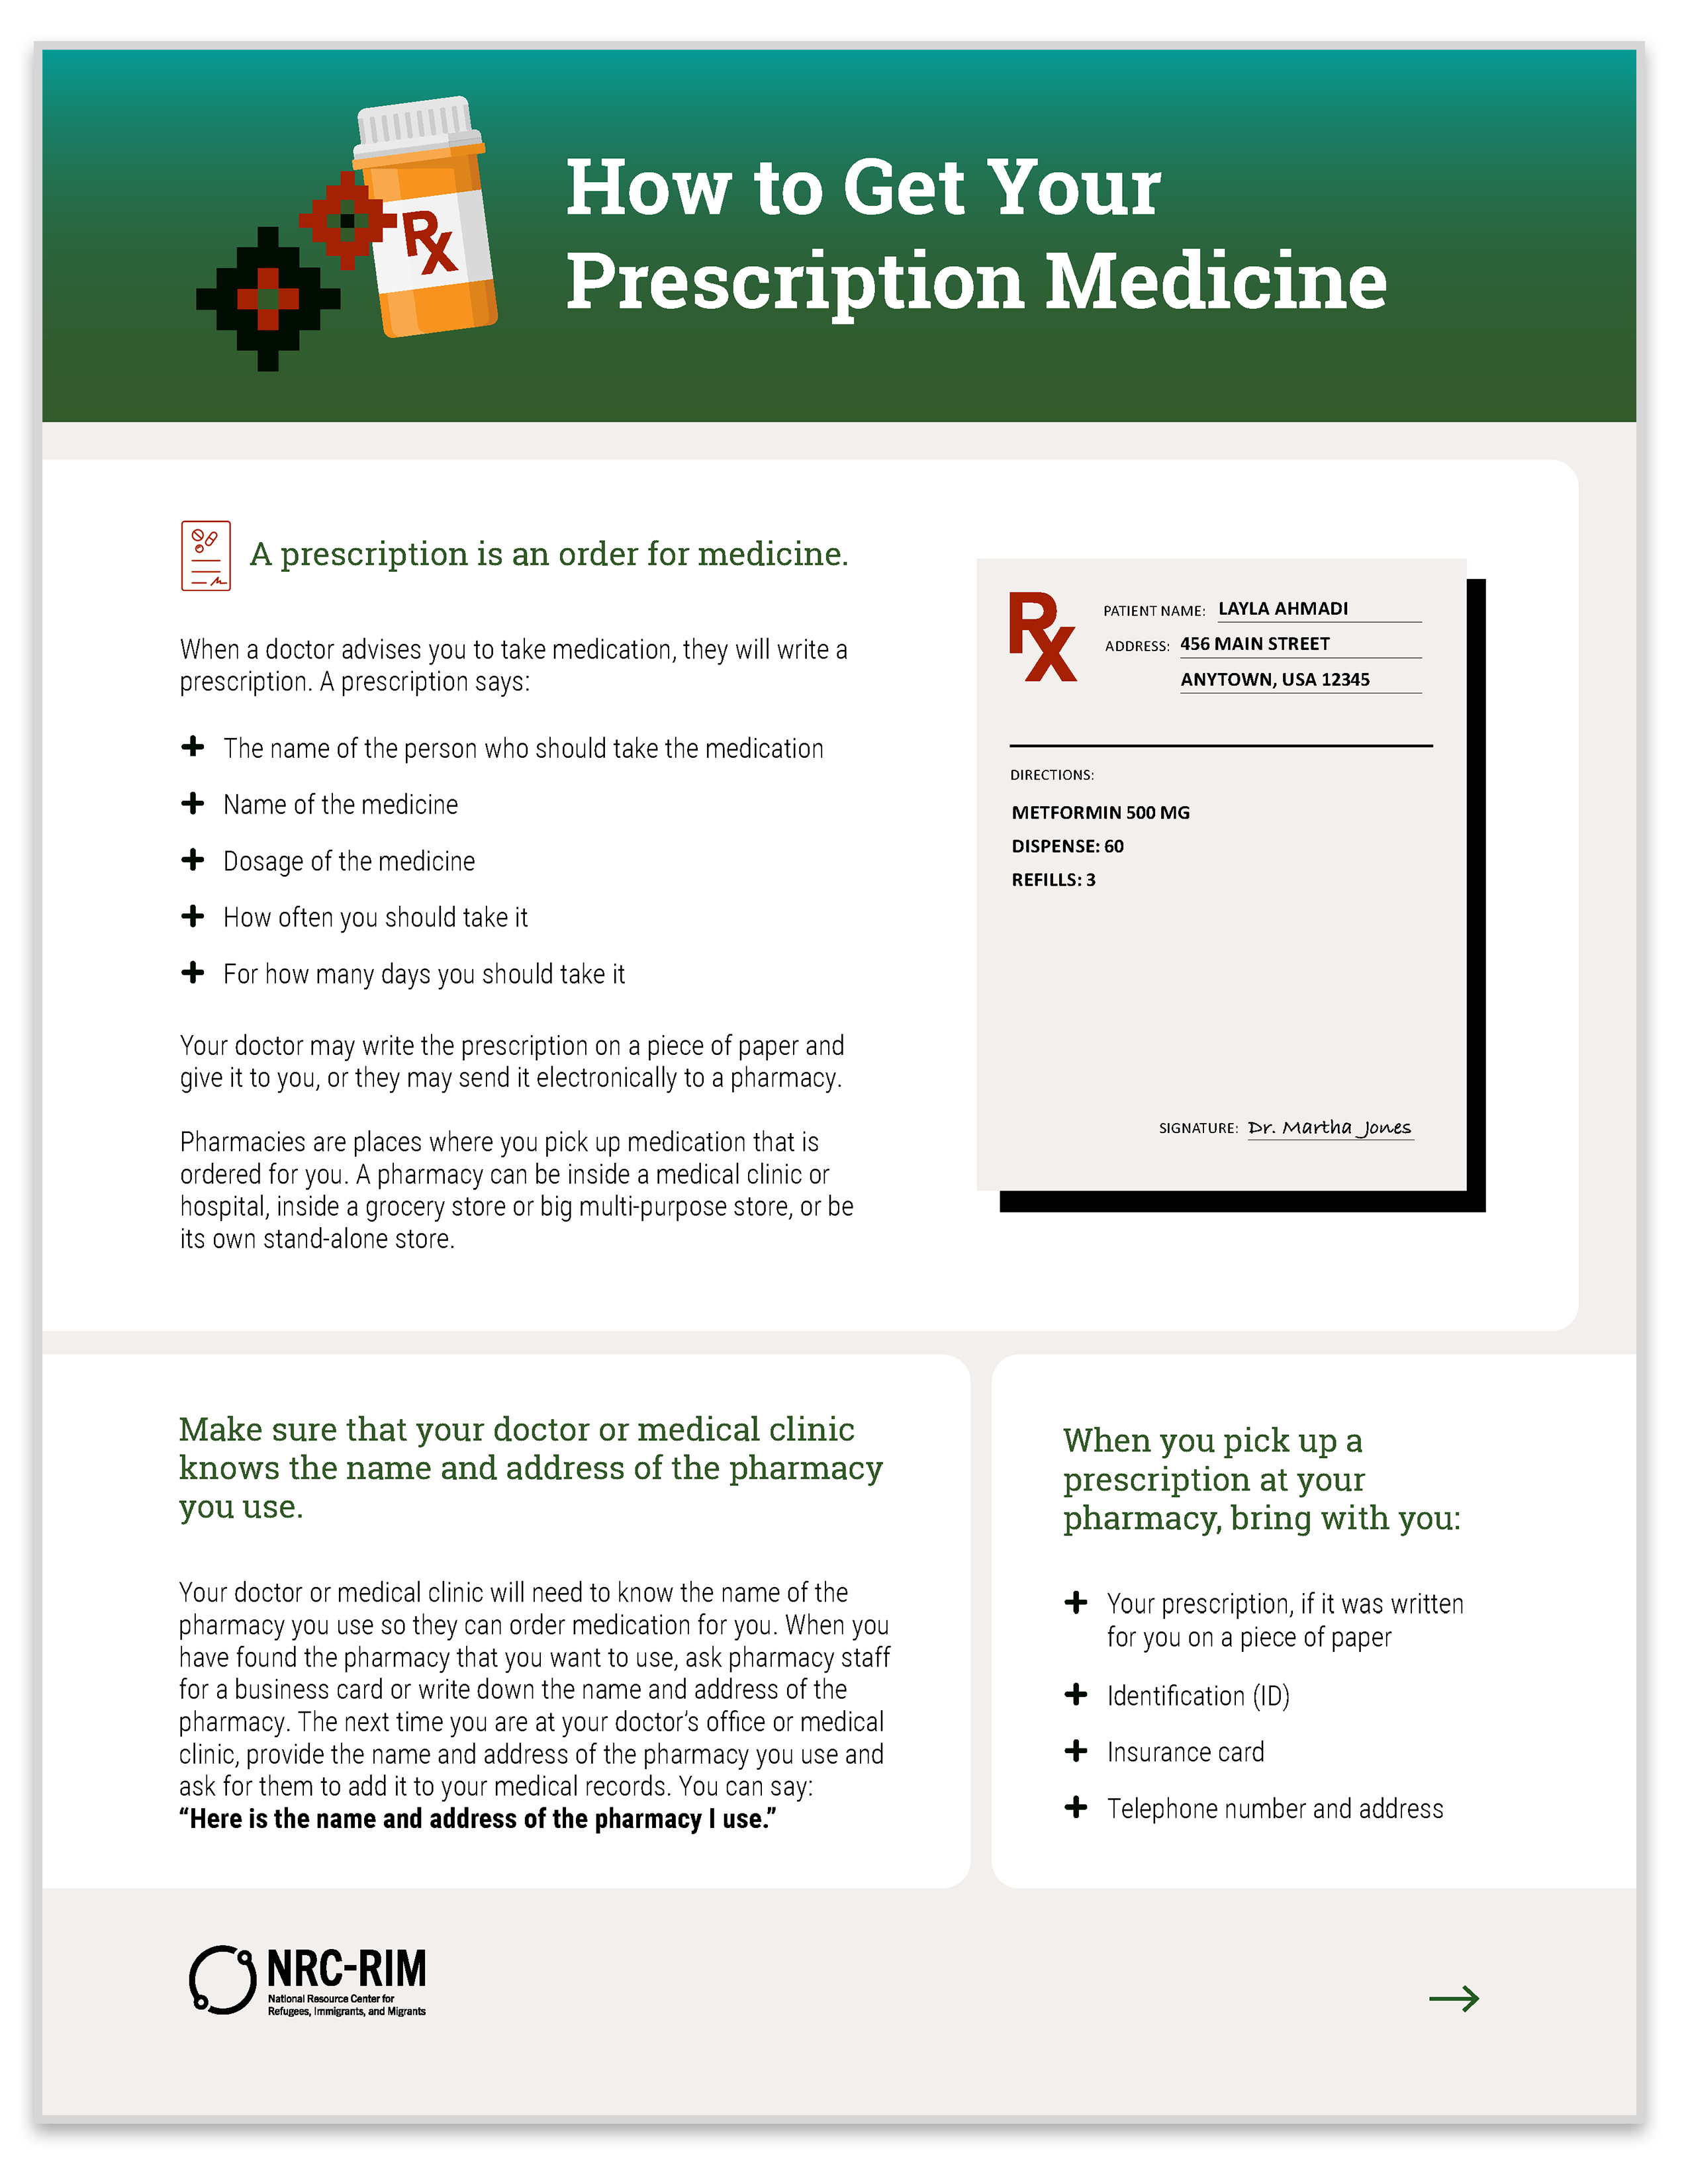 how to get prescription medicine